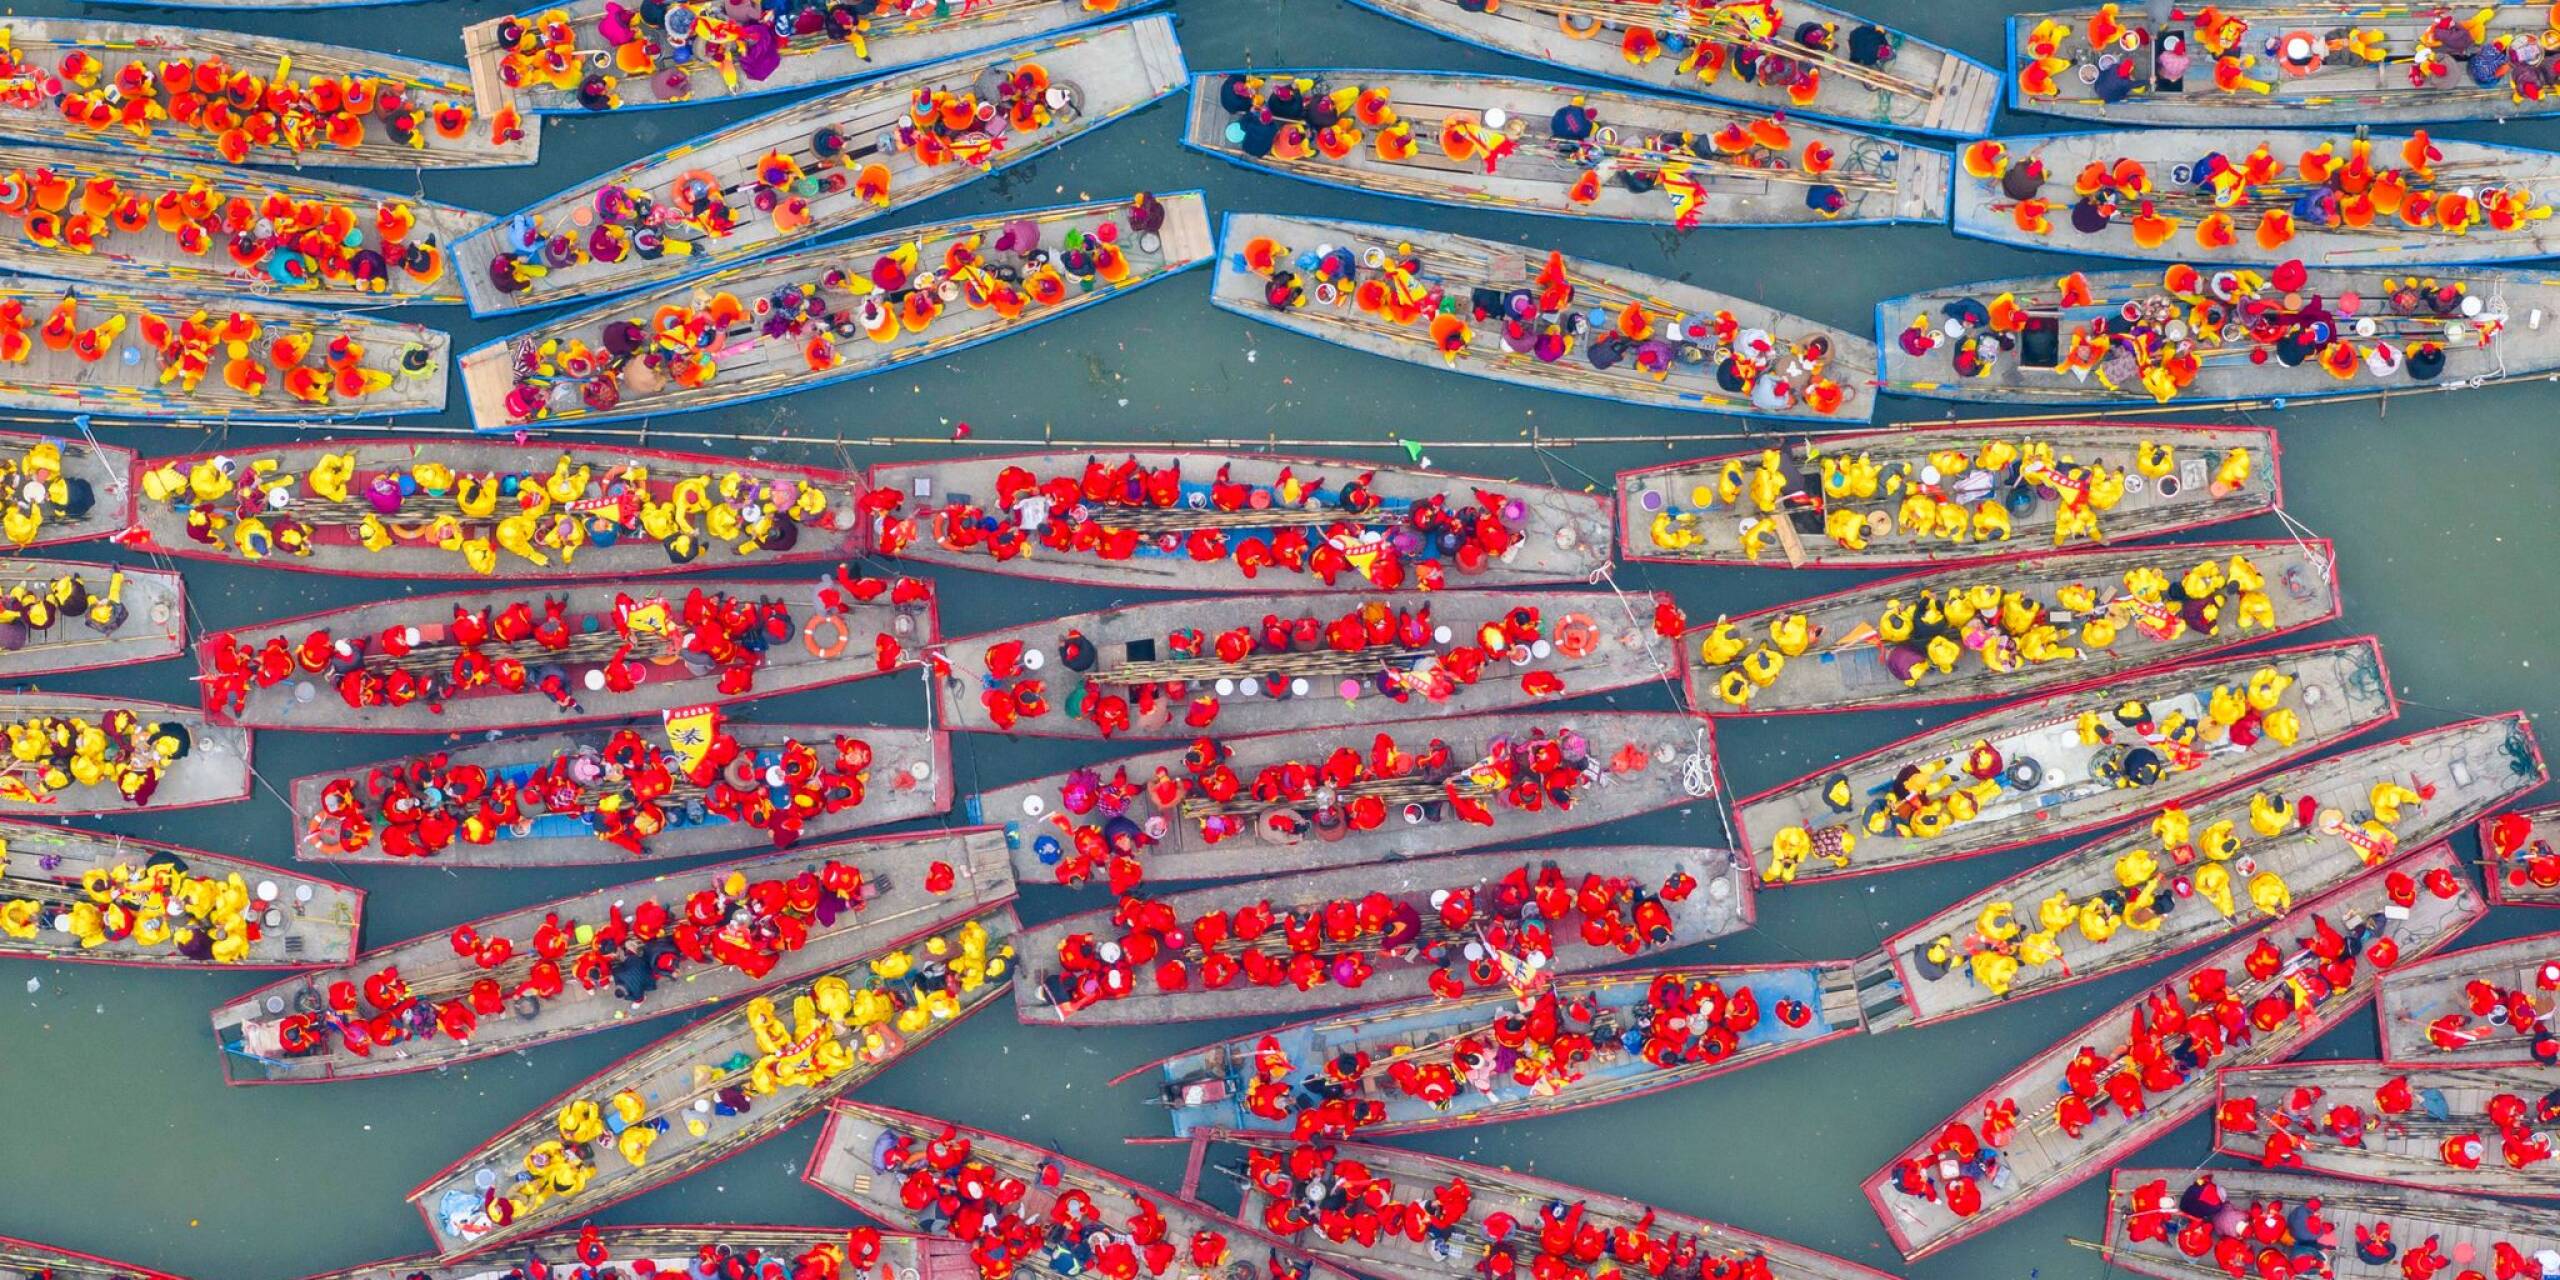 Ein bunter Haufen: Hunderte Boote nehmen am traditionellen Qintong-Bootsfestival in der chinesischen Stadt Taizhou teil. Das Festival findet anlässlich des Qingming-Fests, dem chinesischen Totengedenkfest, statt.